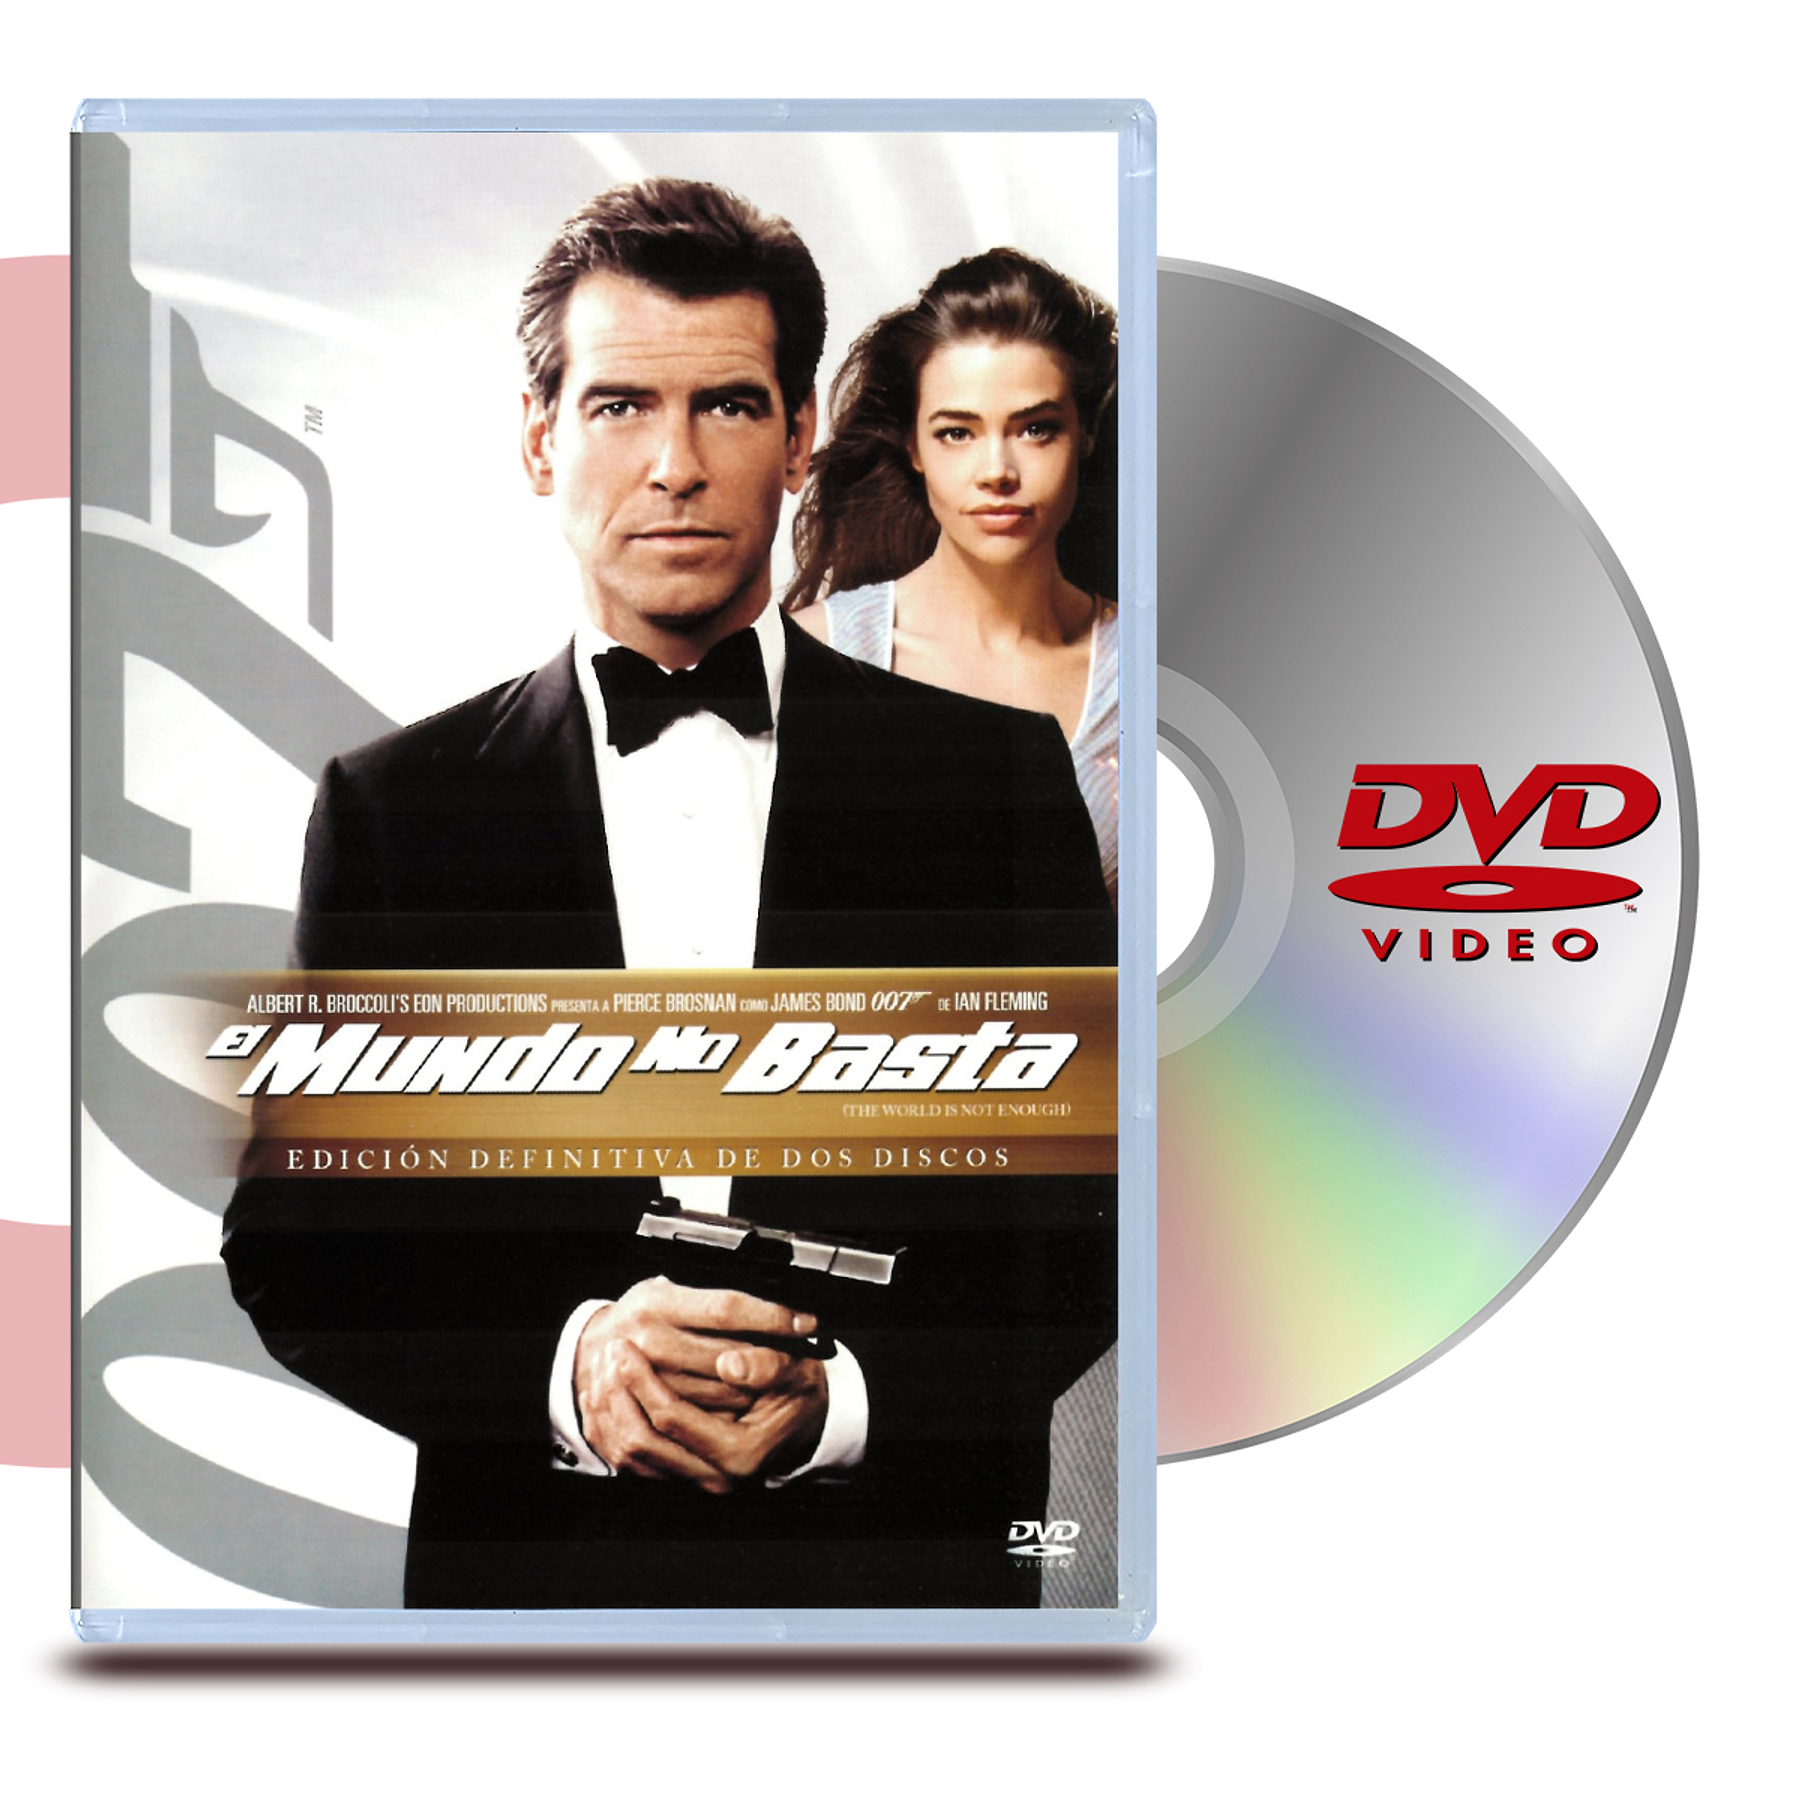 DVD 007 EL MUNDO NO BASTA